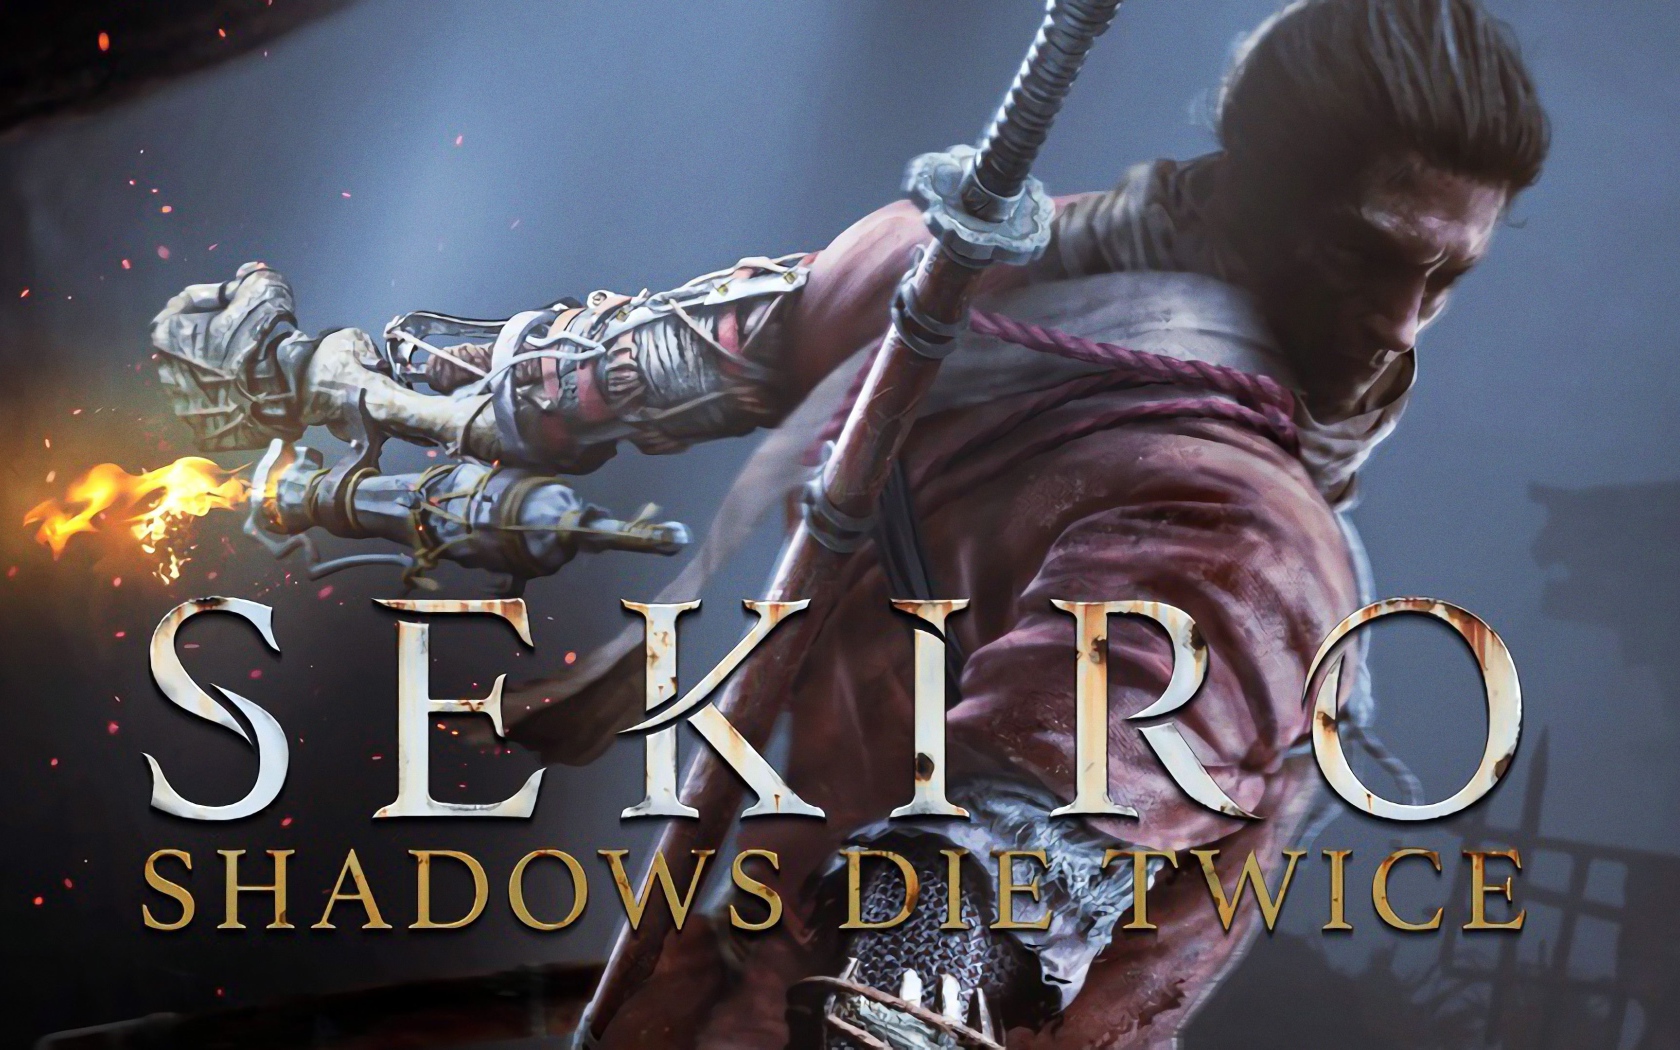 Постер компьютерной игры Sekiro: Shadows Die Twice, 2019 года